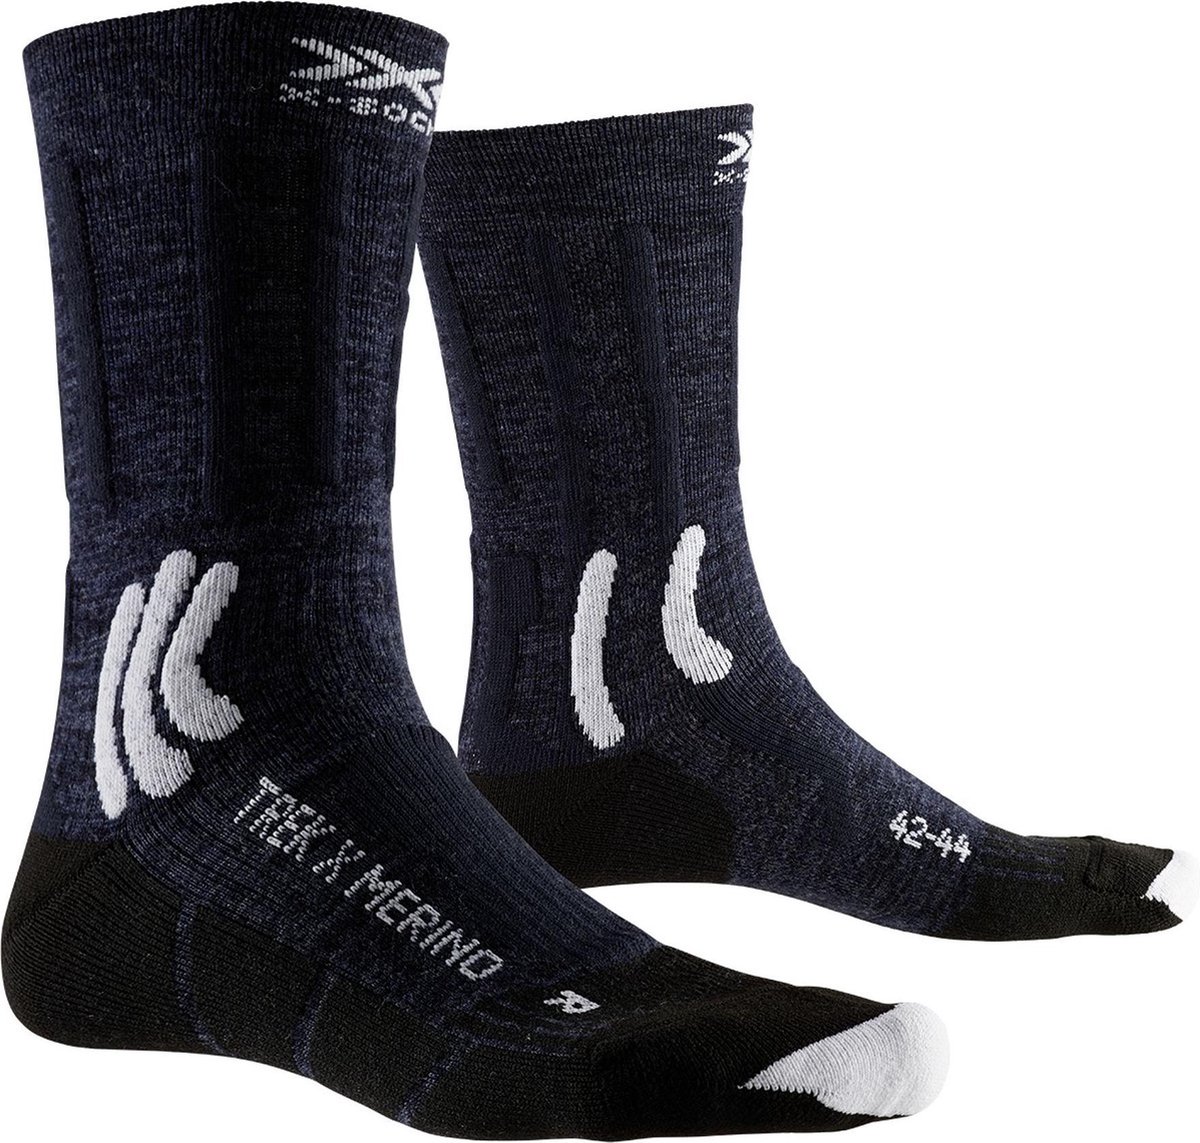 X-Socks Sportsokken - Maat 42-44 - Mannen - donkerblauw/wit